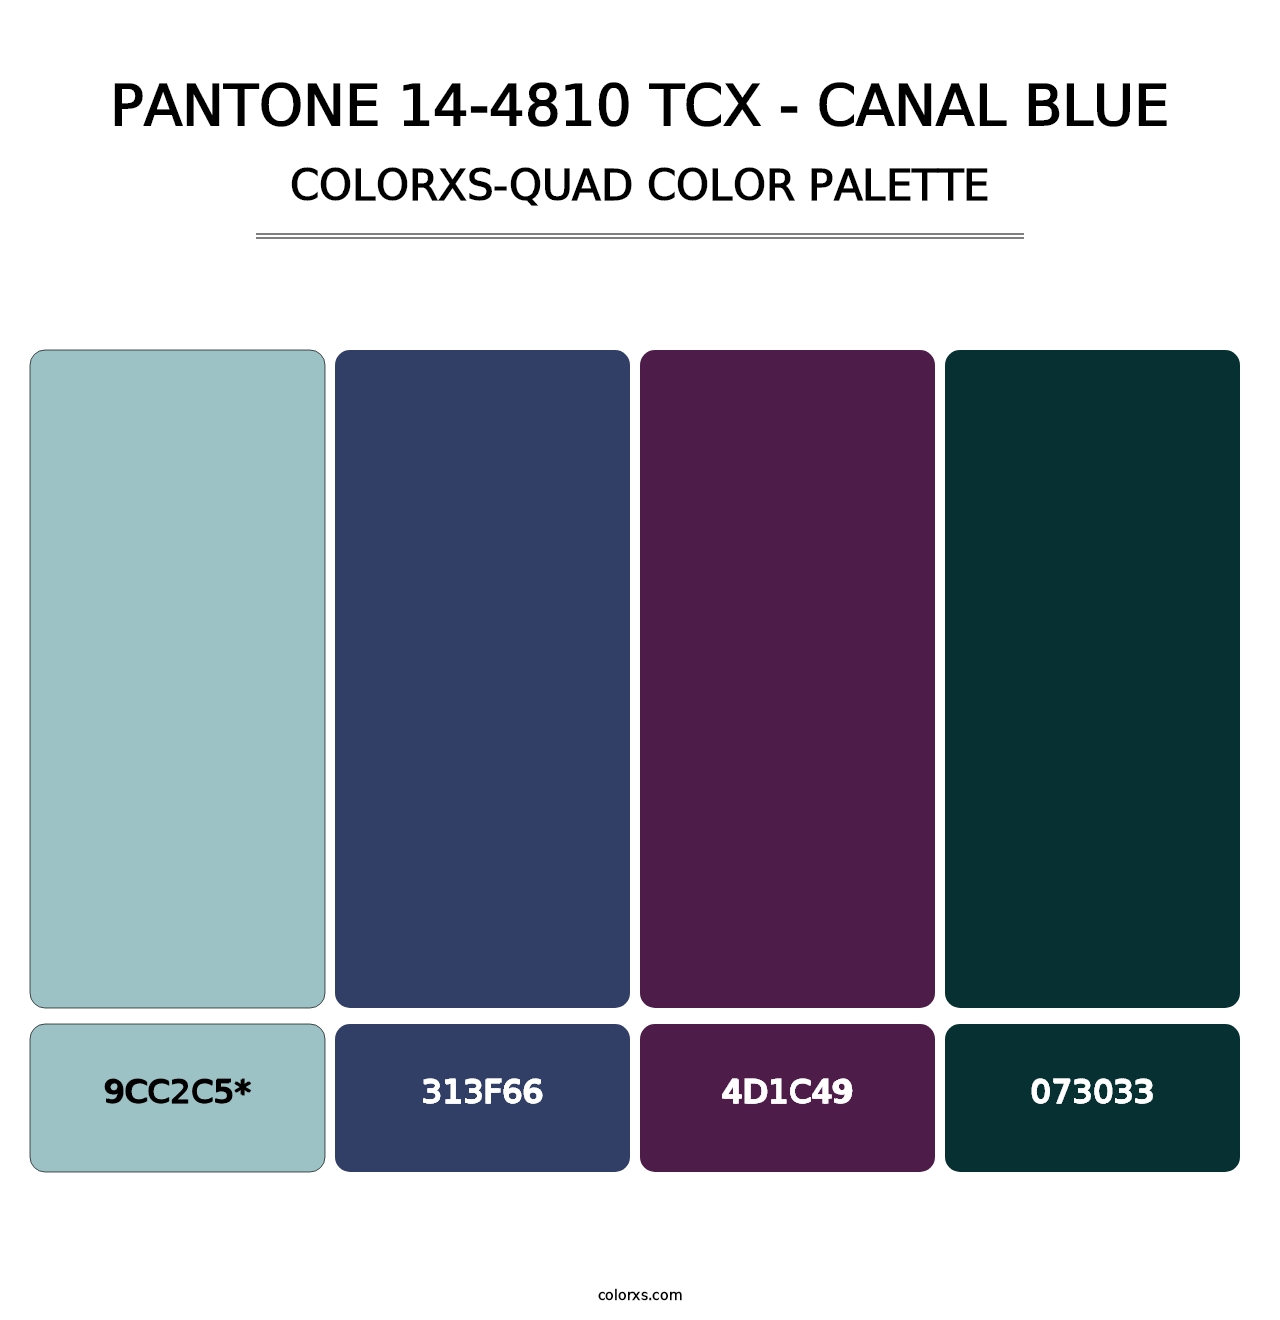 PANTONE 14-4810 TCX - Canal Blue - Colorxs Quad Palette